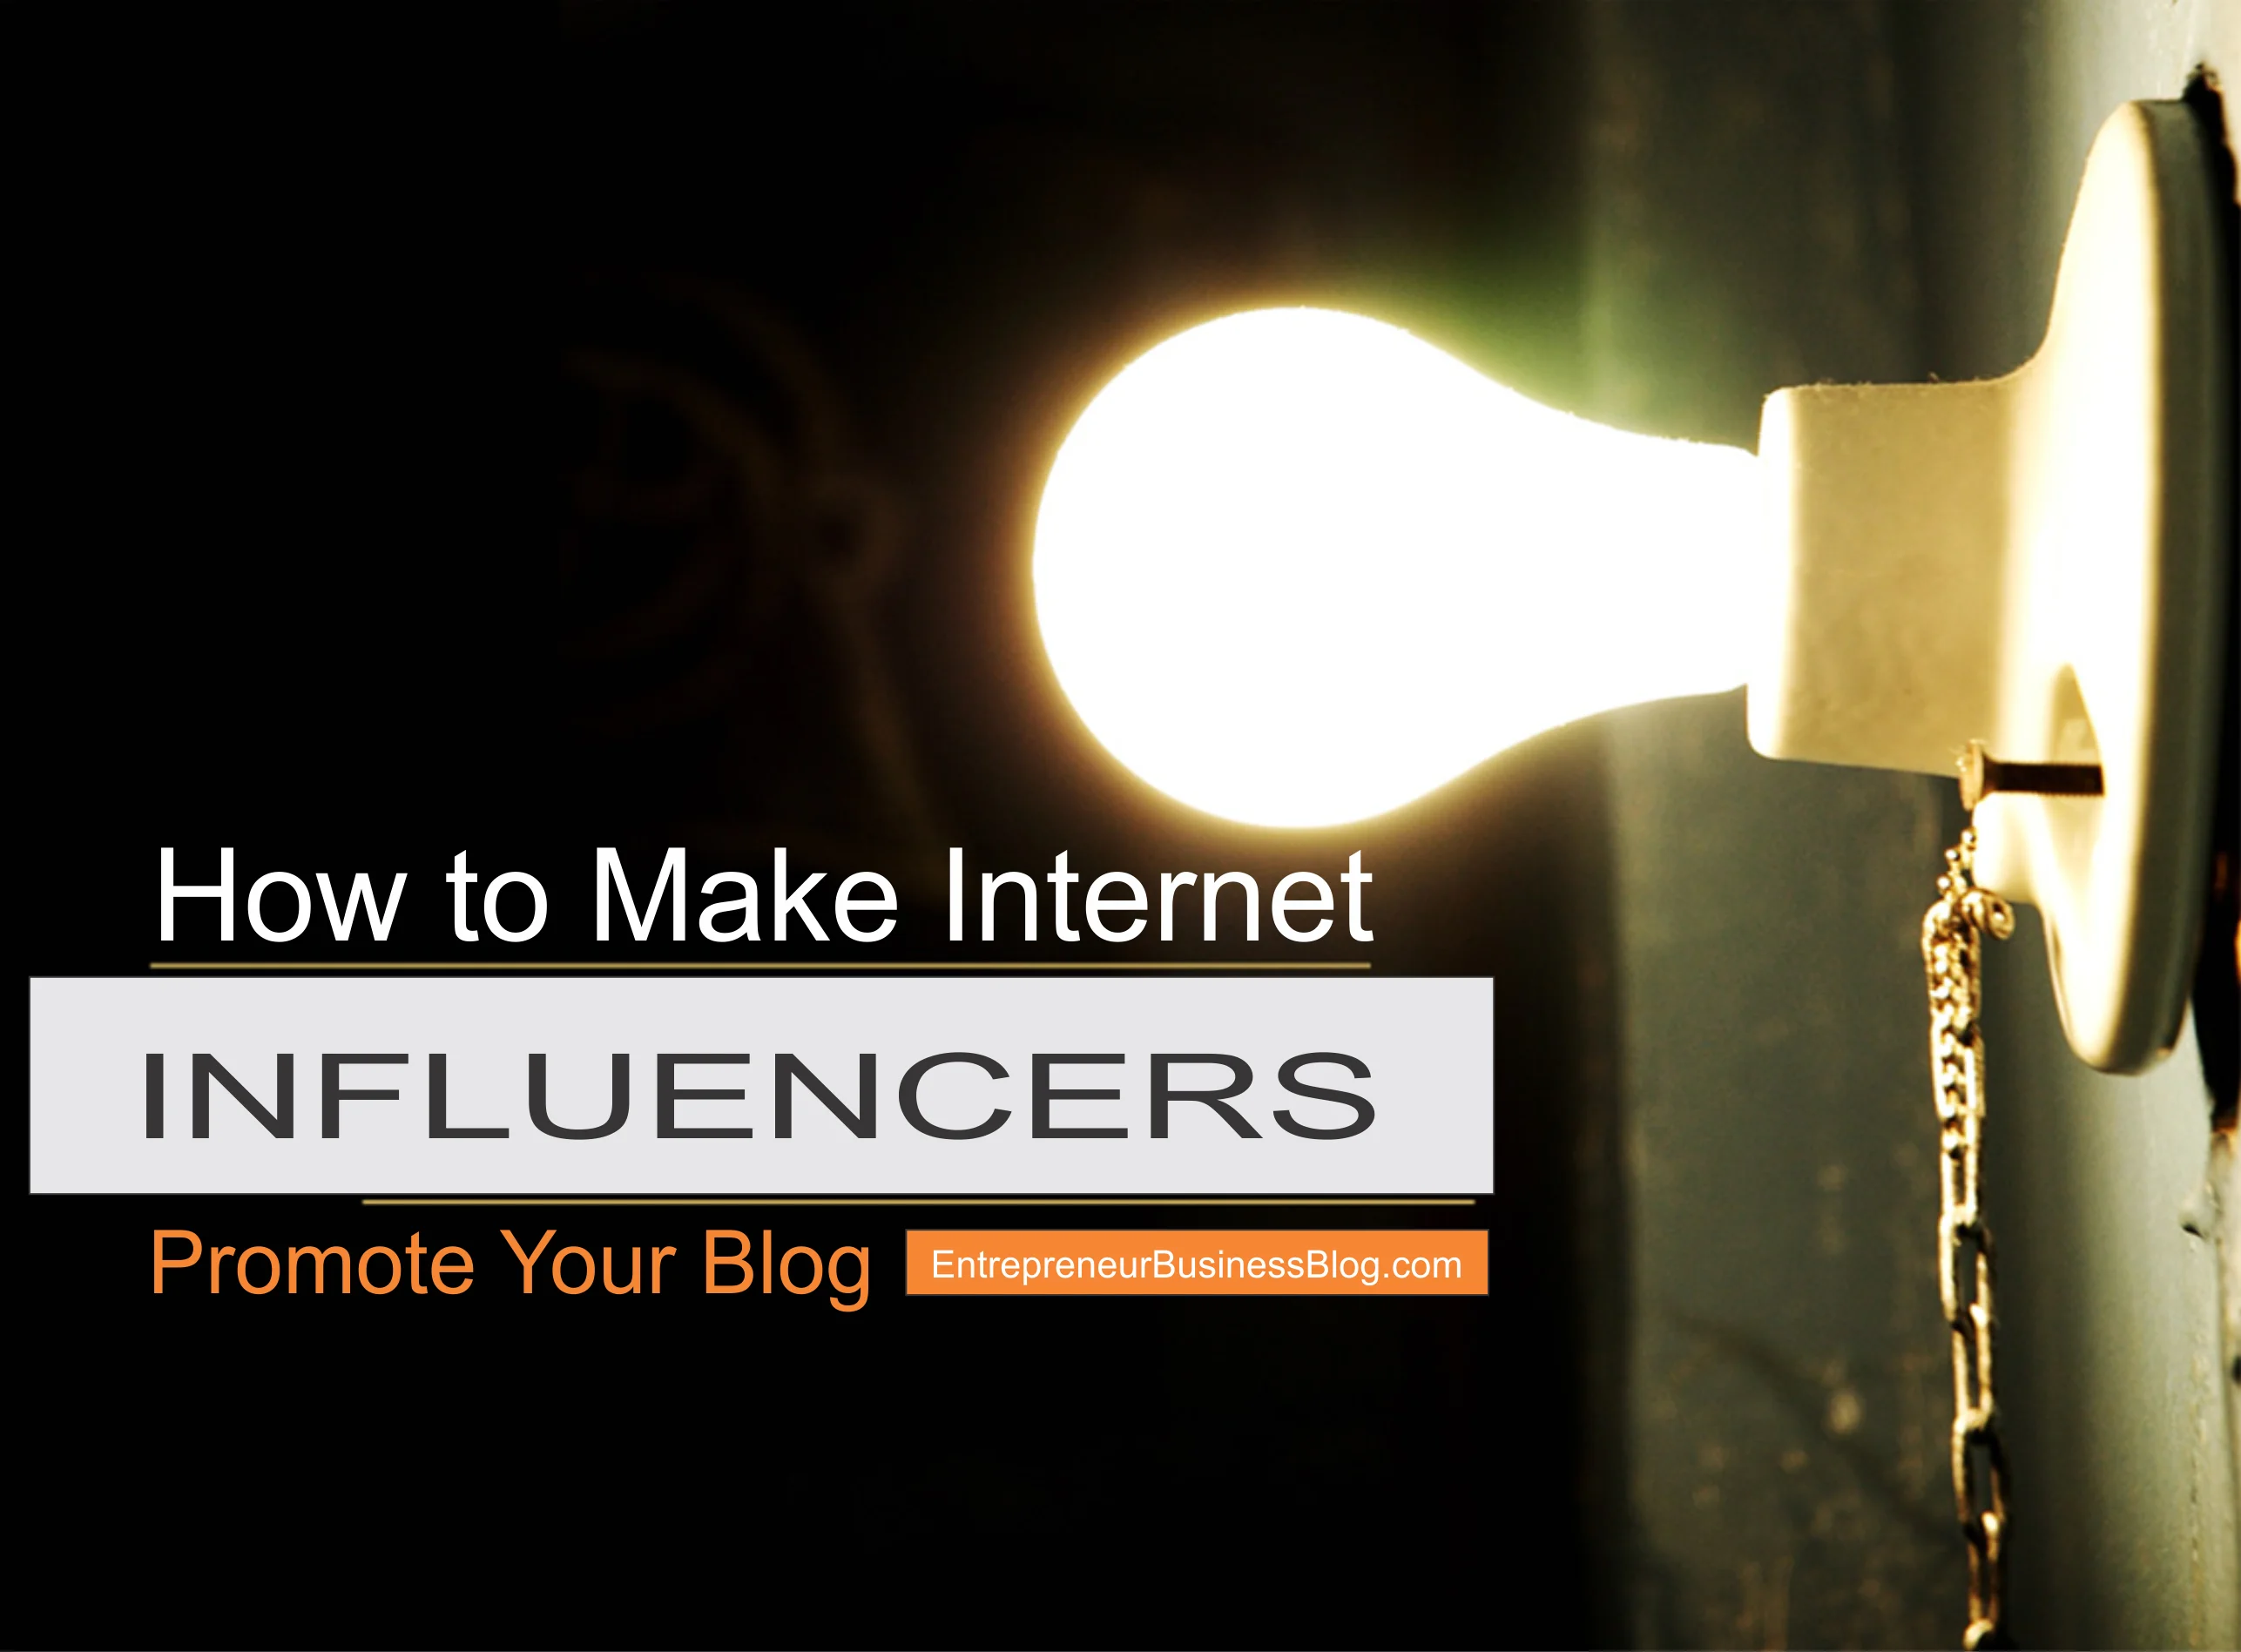 Make internet influencers promote my blog